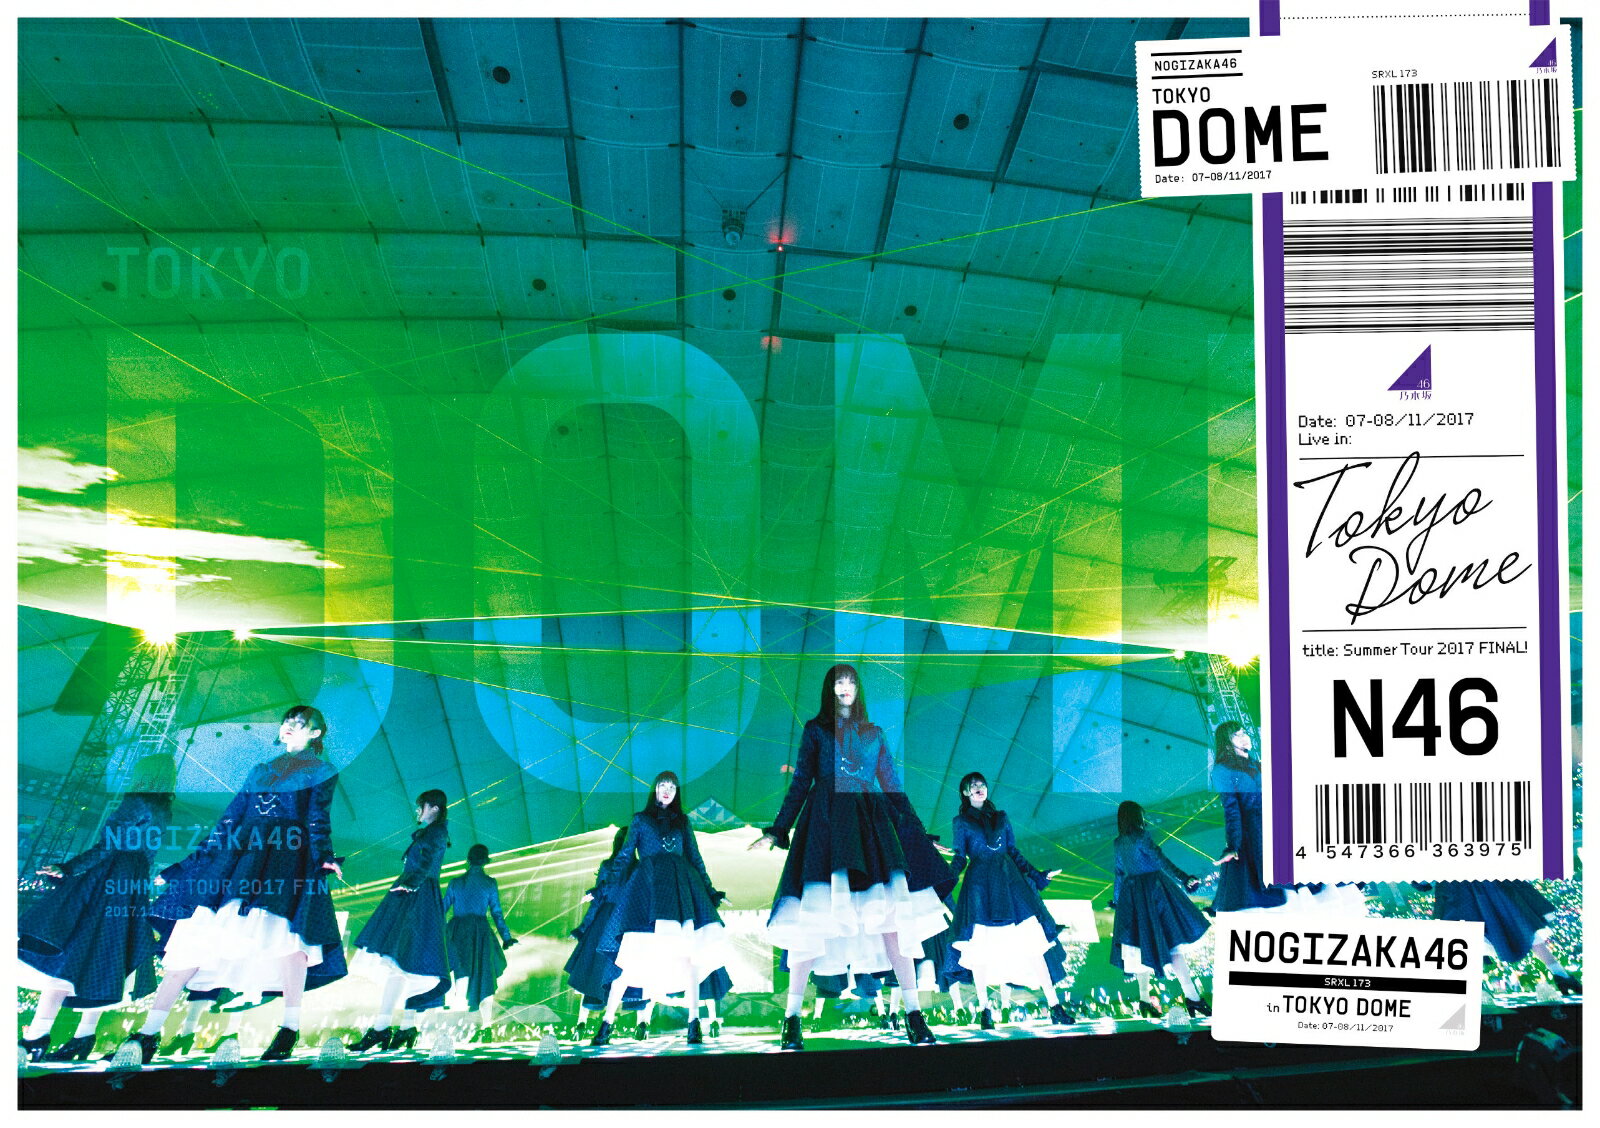 真夏の全国ツアー2017 FINAL! IN TOKYO DOME(通常盤)【Blu-ray】 [ 乃木坂46 ]